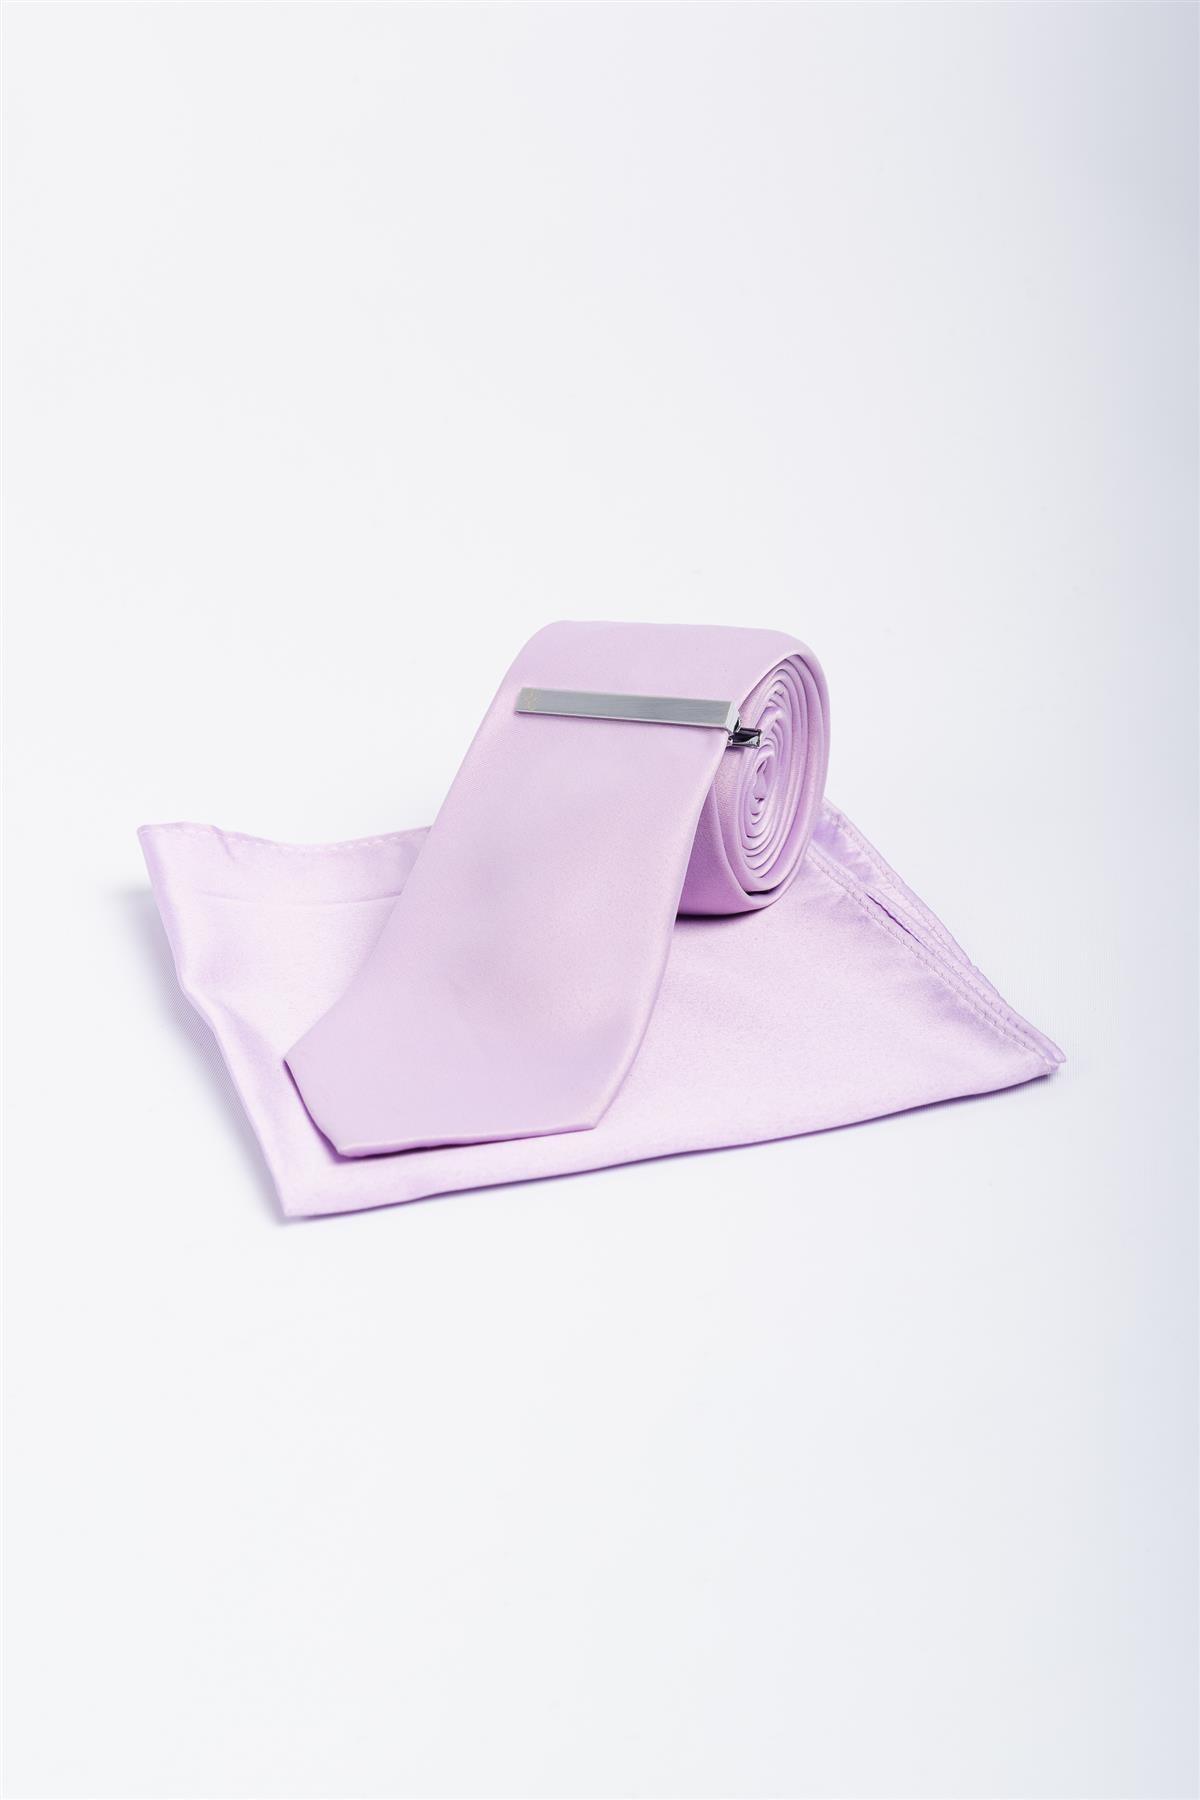 Plain lilac tie set